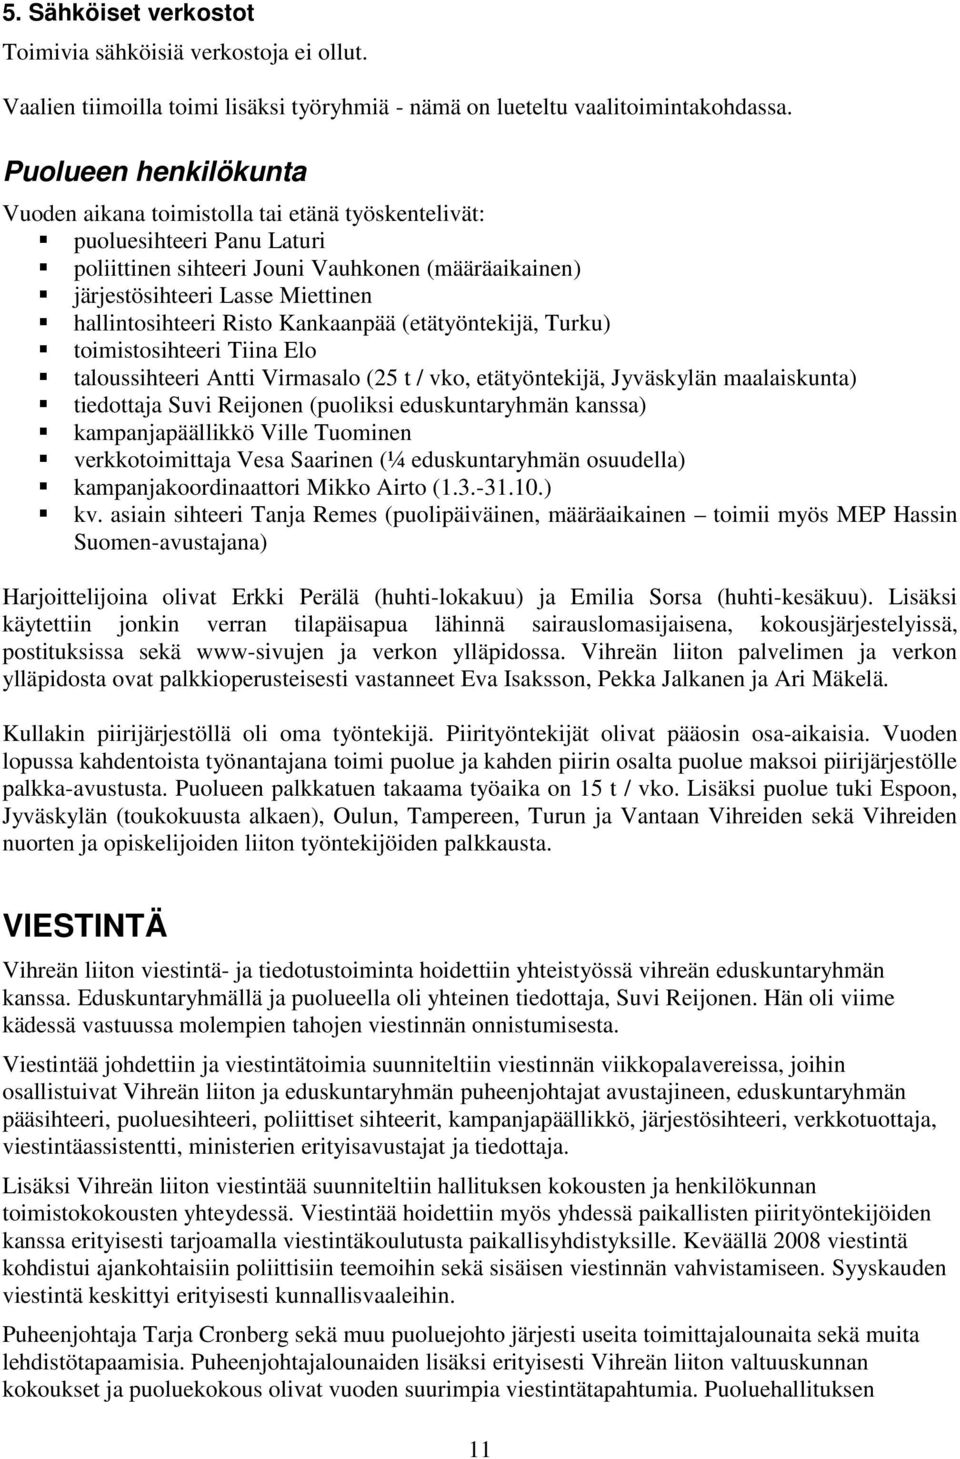 hallintosihteeri Risto Kankaanpää (etätyöntekijä, Turku) toimistosihteeri Tiina Elo taloussihteeri Antti Virmasalo (25 t / vko, etätyöntekijä, Jyväskylän maalaiskunta) tiedottaja Suvi Reijonen